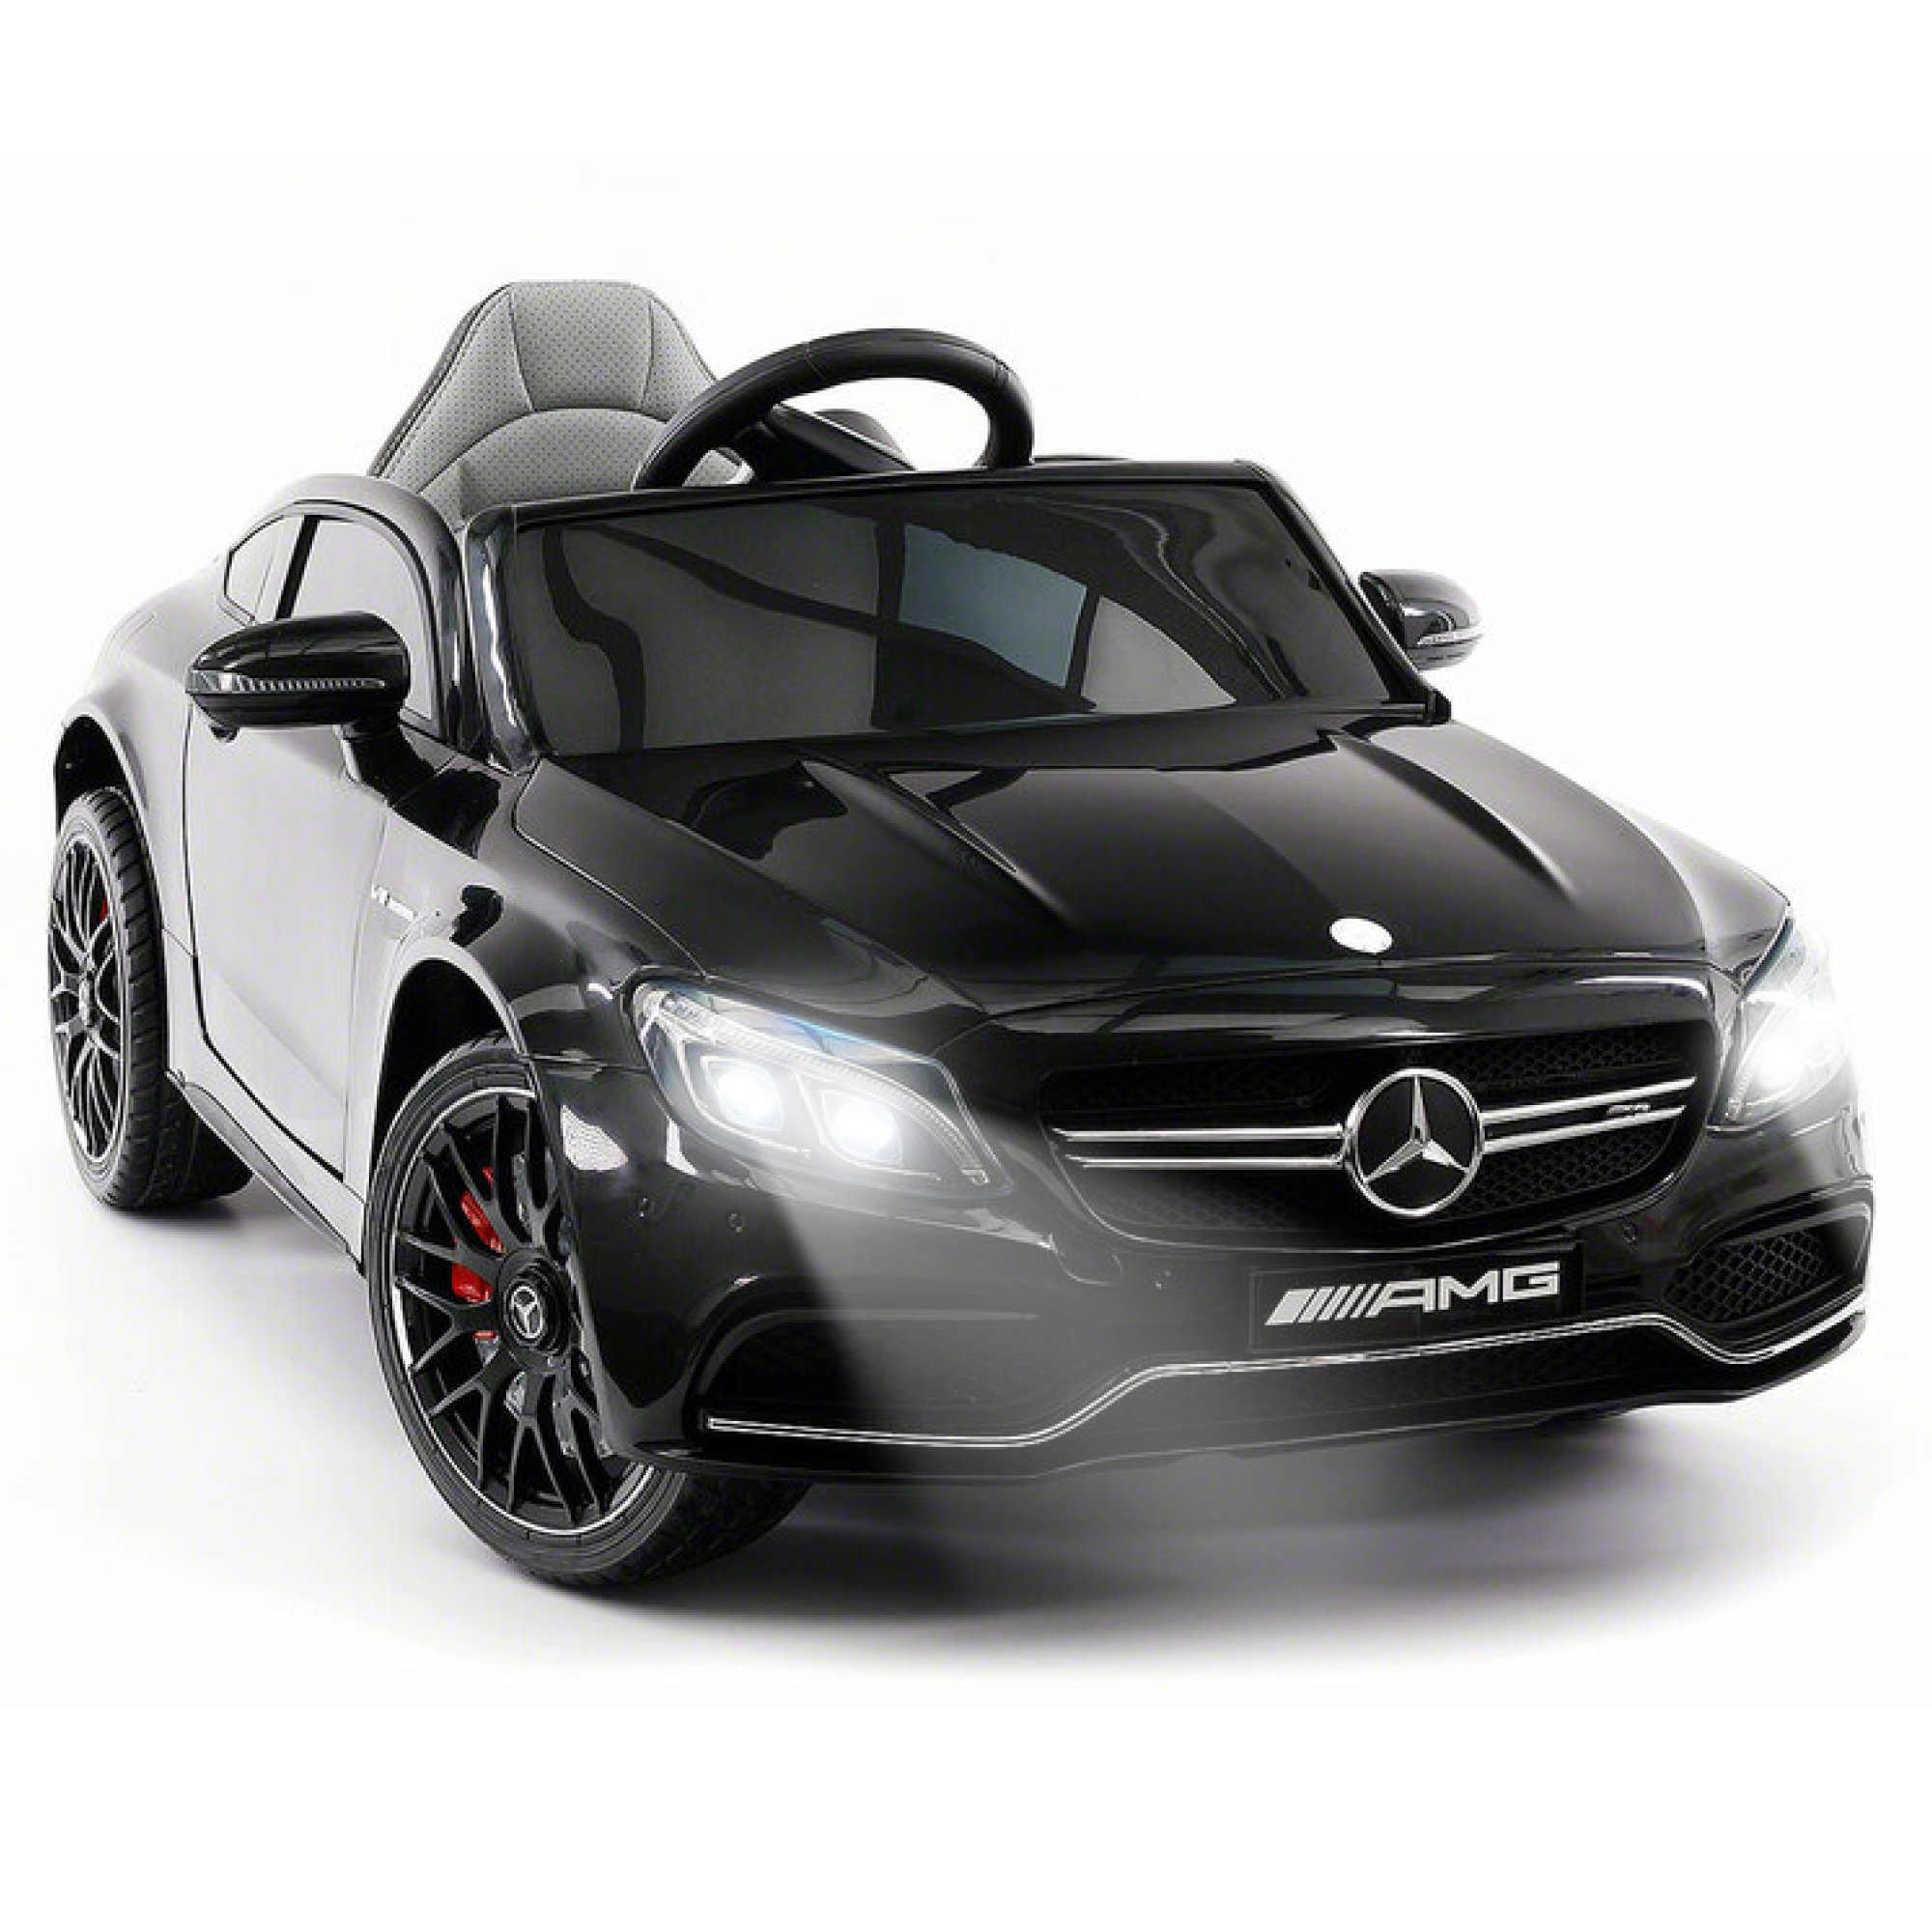 Licensed Mercedes Ride On Car 12V Kids Electric Motorized Vehicle with LED Lights, Remote Control Moderno Kids Color: Black